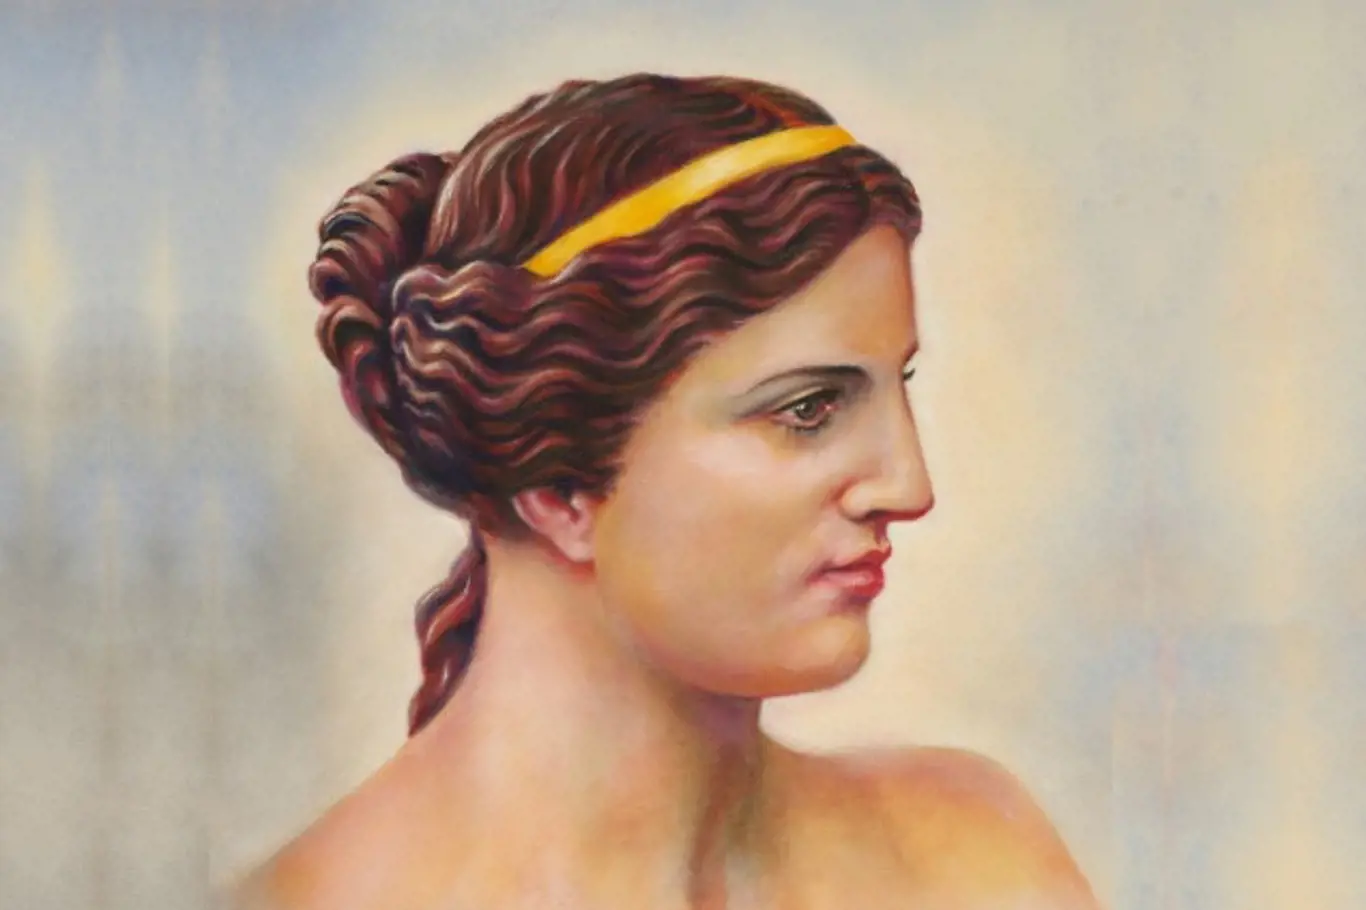 Ideálem řecké krásy byl souměrný obličej a zaoblené tvary.